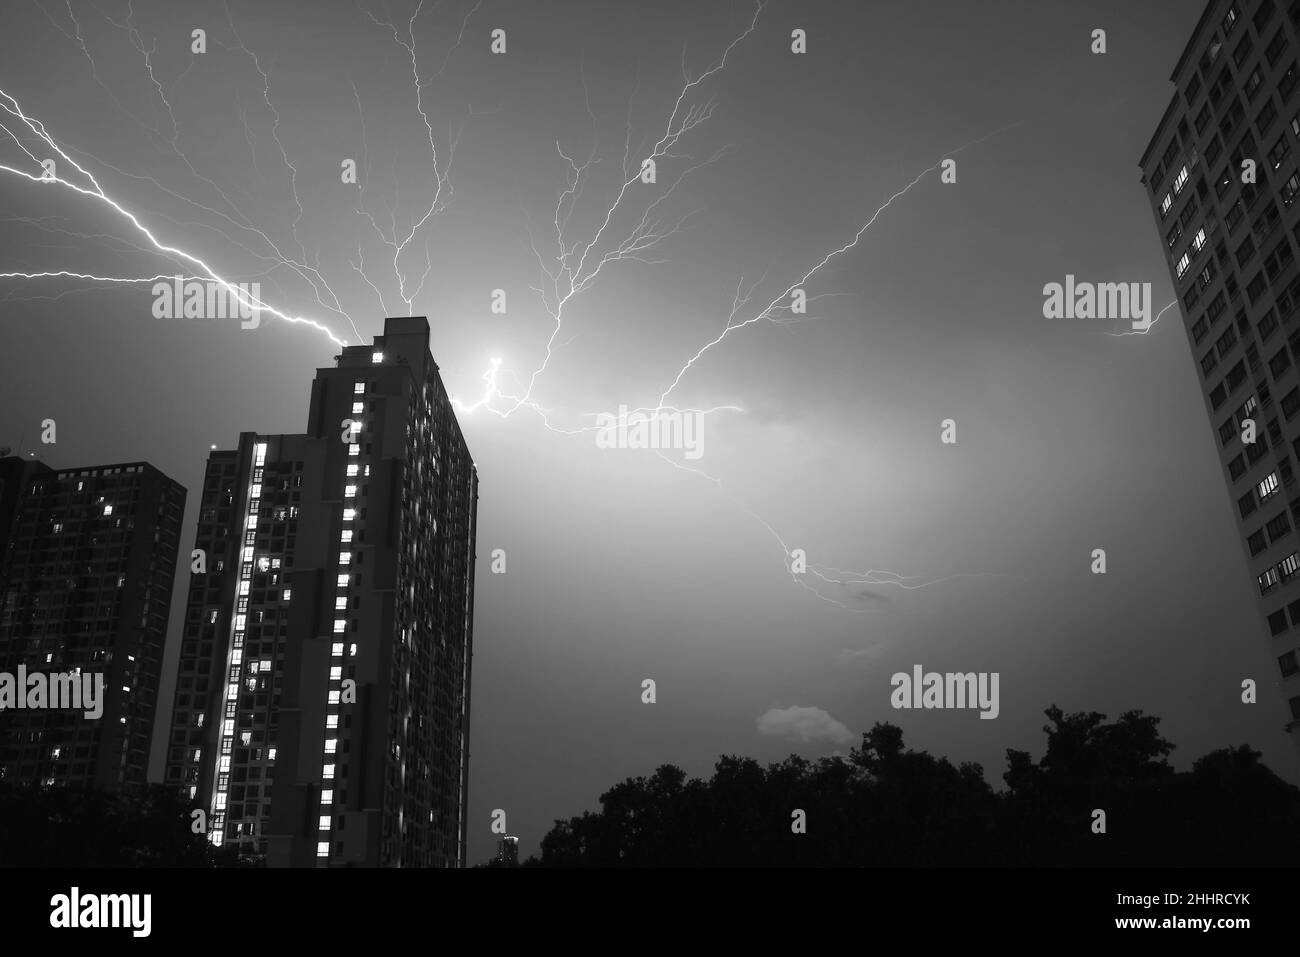 Monochrom-Bild von Incredible Real Lightning schlägt in den städtischen Nachthimmel Stockfoto